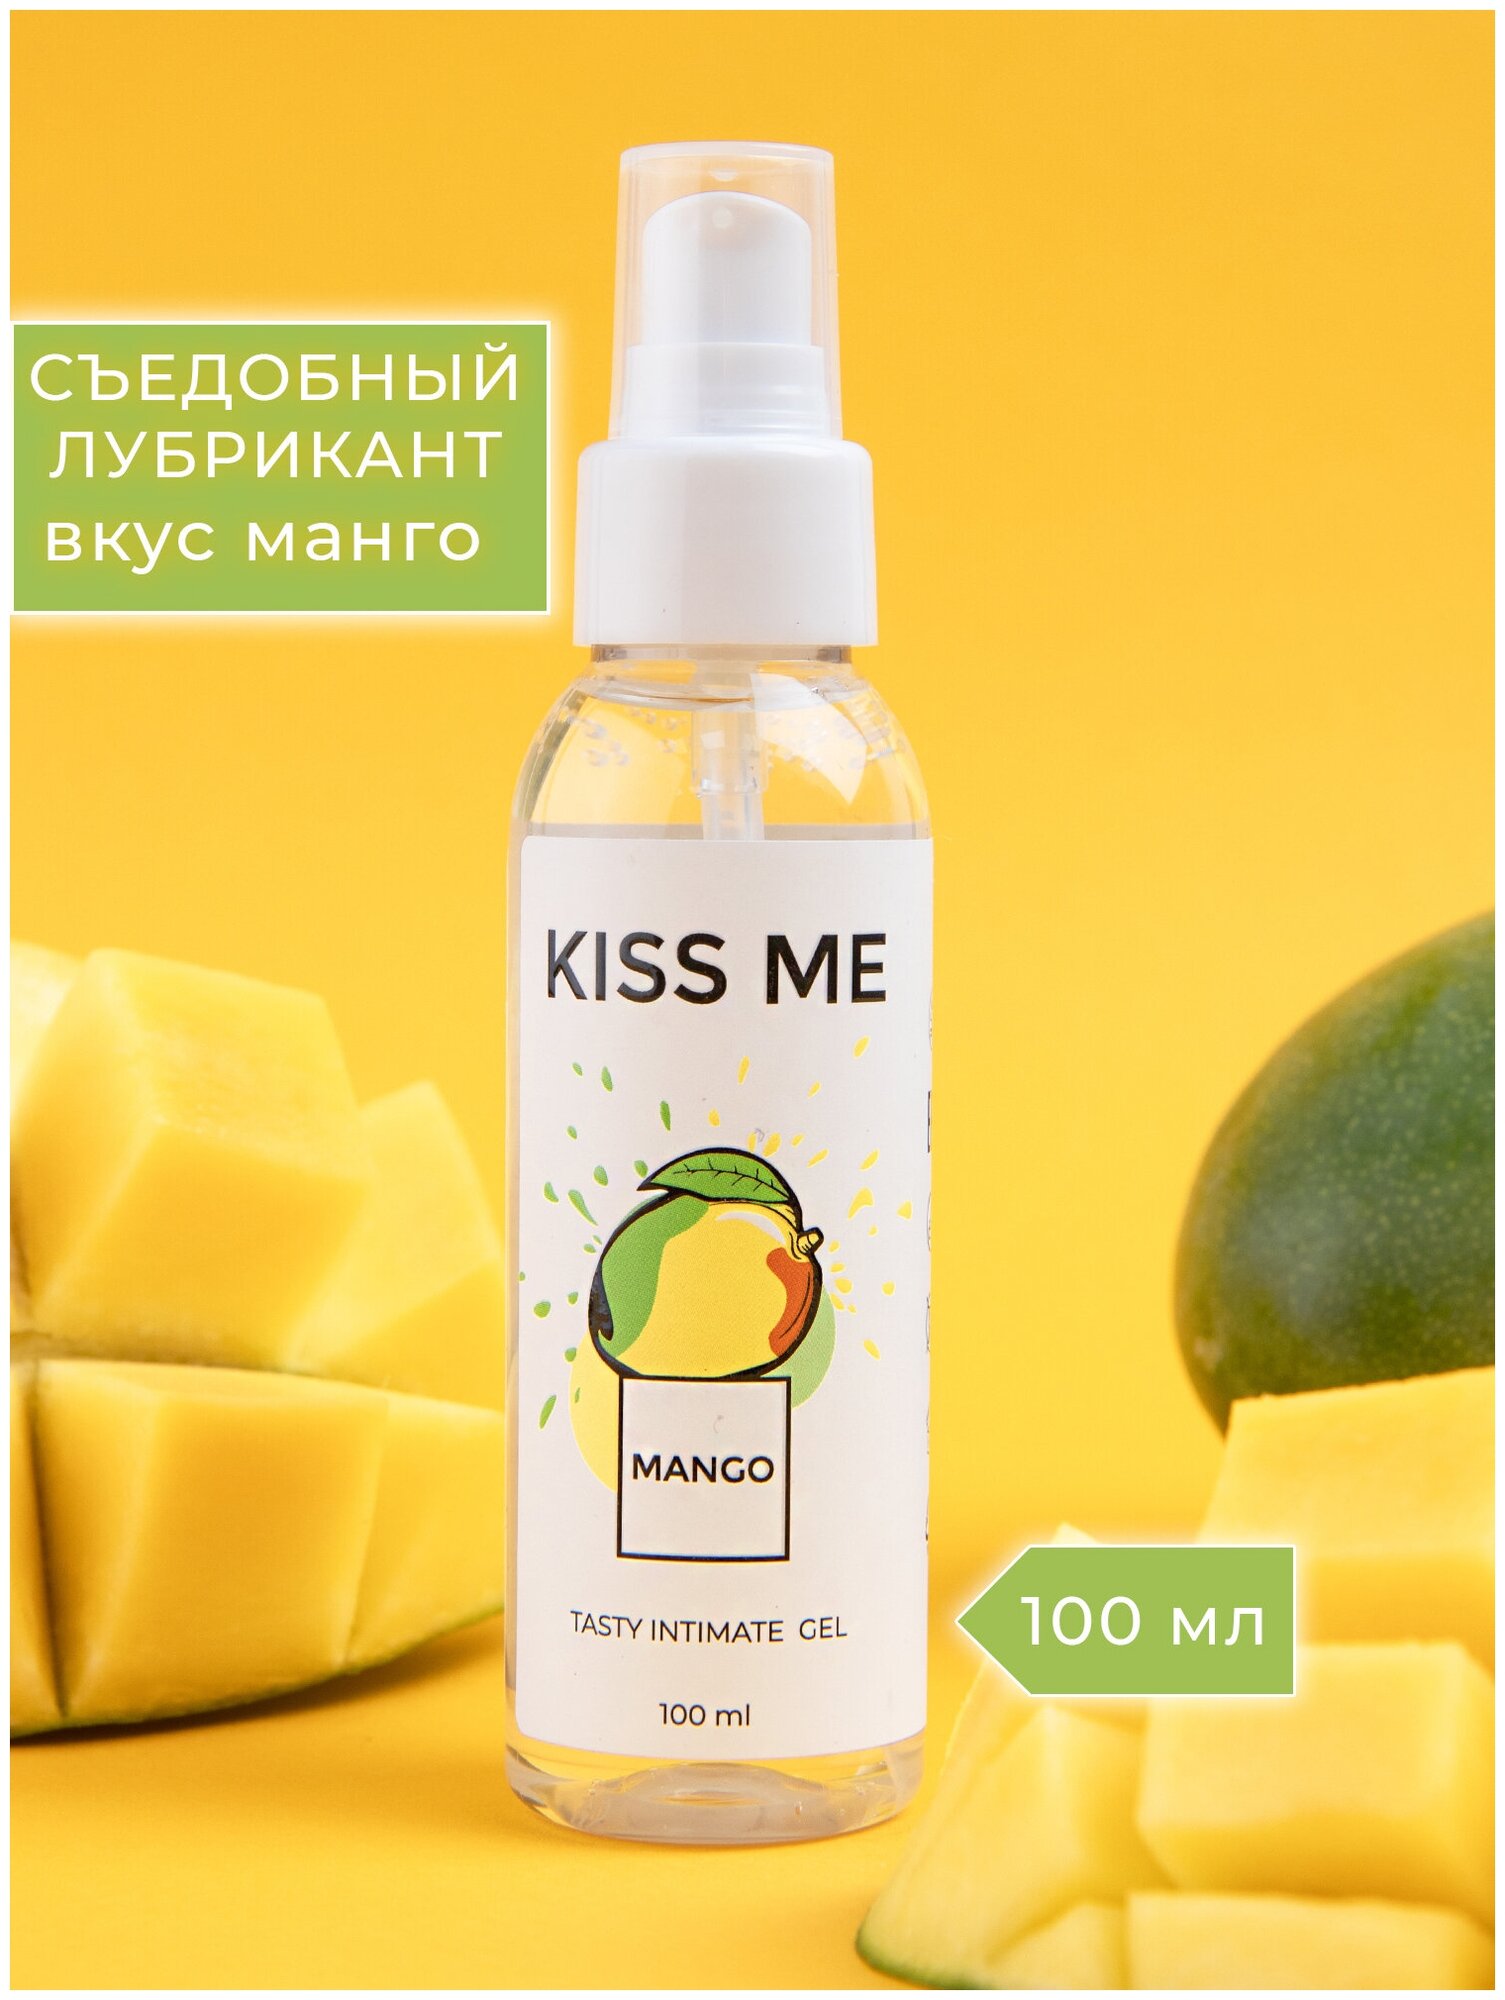 Гель-смазка Smaska Съедобный лубрикант на водной основе "Kiss me" со вкусом манго 100 мл